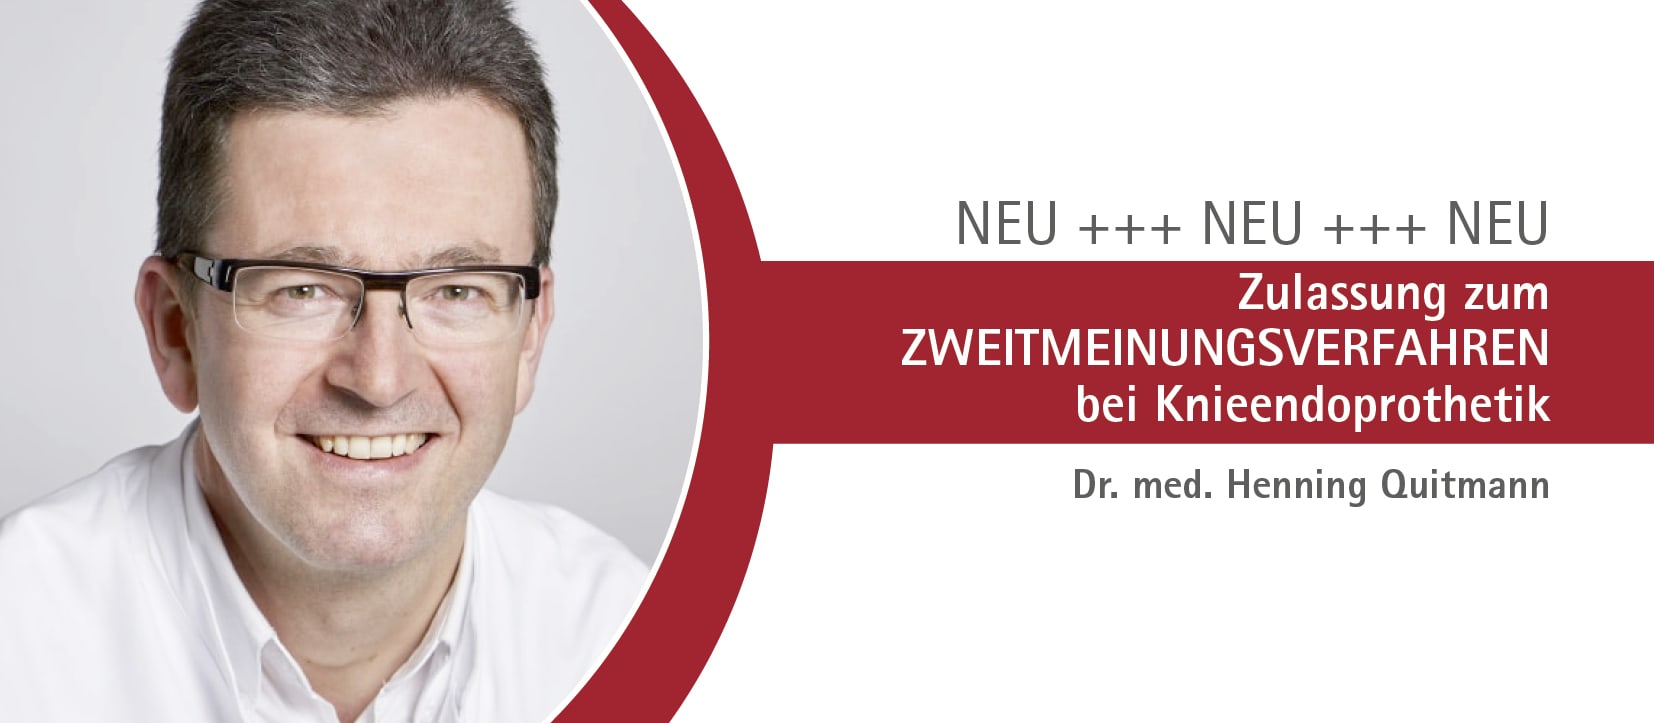 Gelenkzentrum Bergisch Land - Zulassung zum Zweitmeinungsverfahren bei Knieendoprothetik Dr. Henning Quitmann